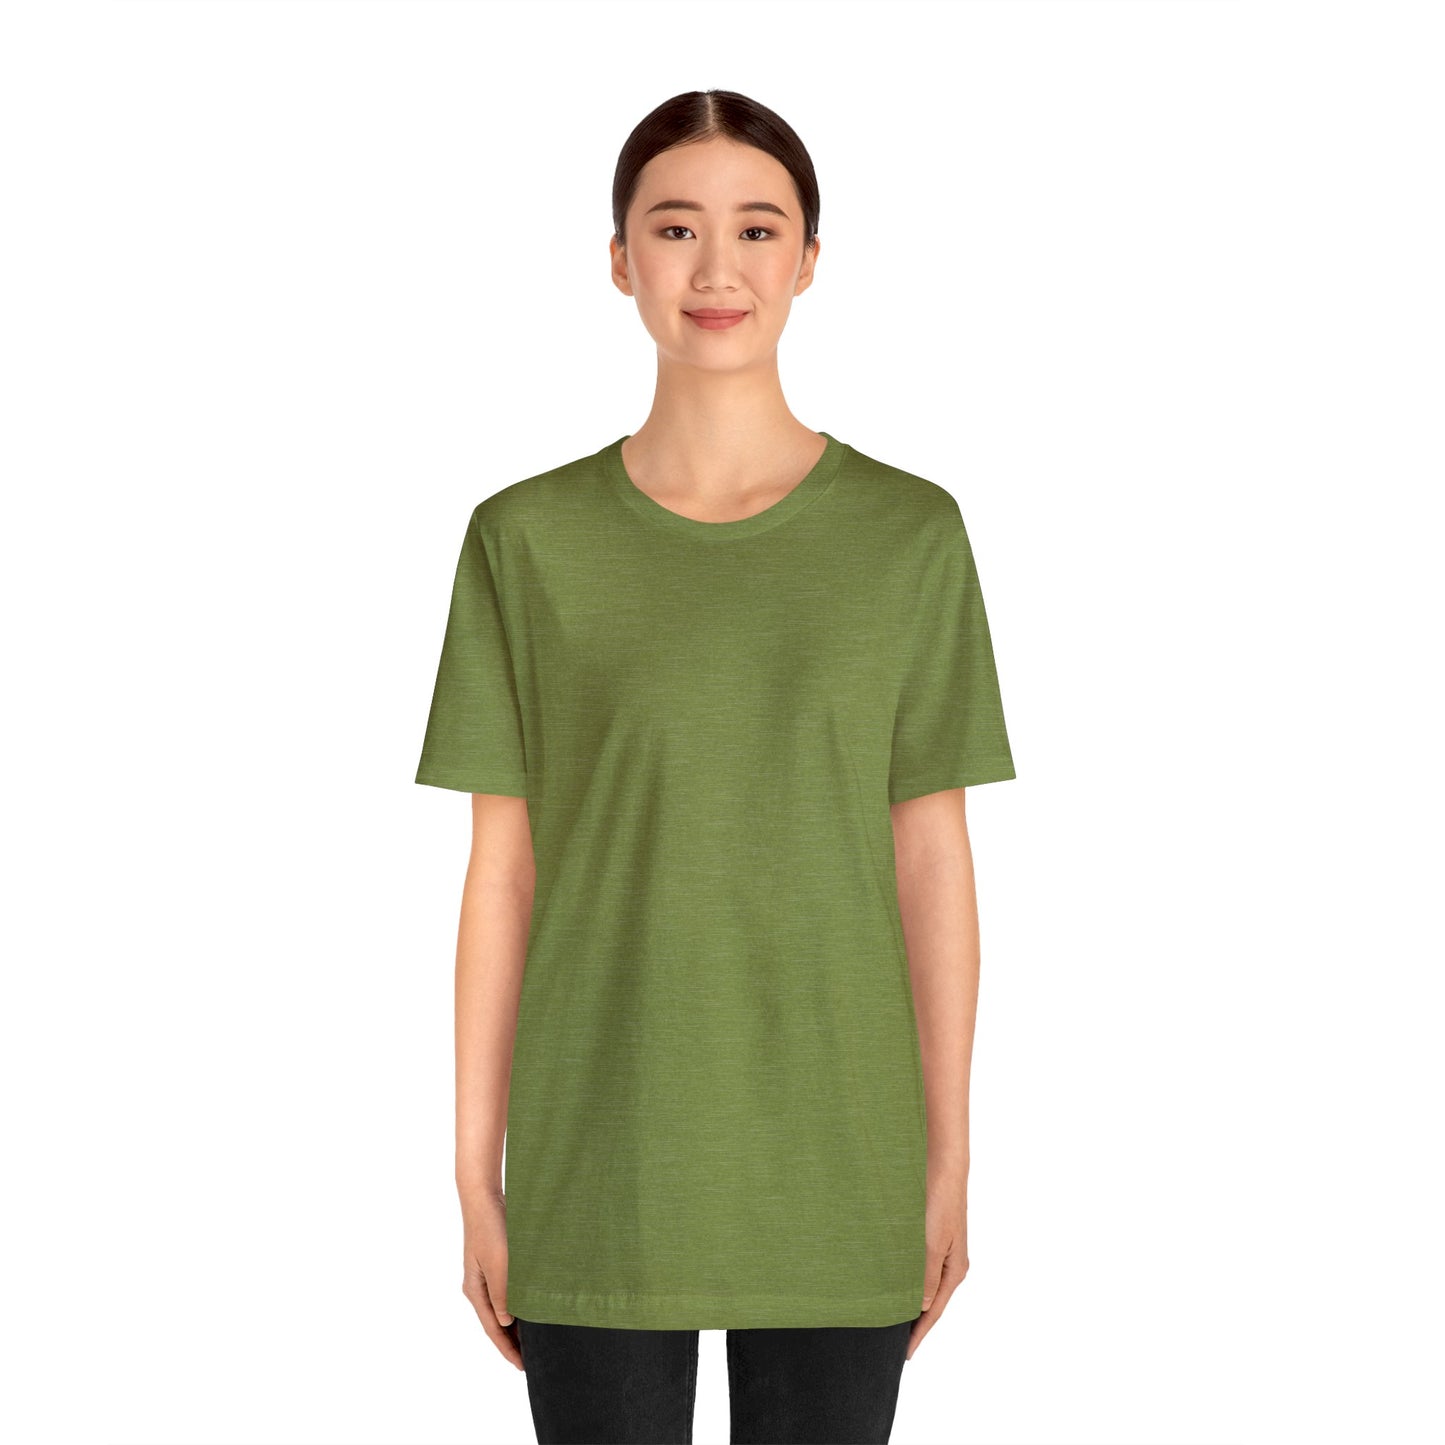 Unisex Jersey Short Sleeve Heather Green T Shirt